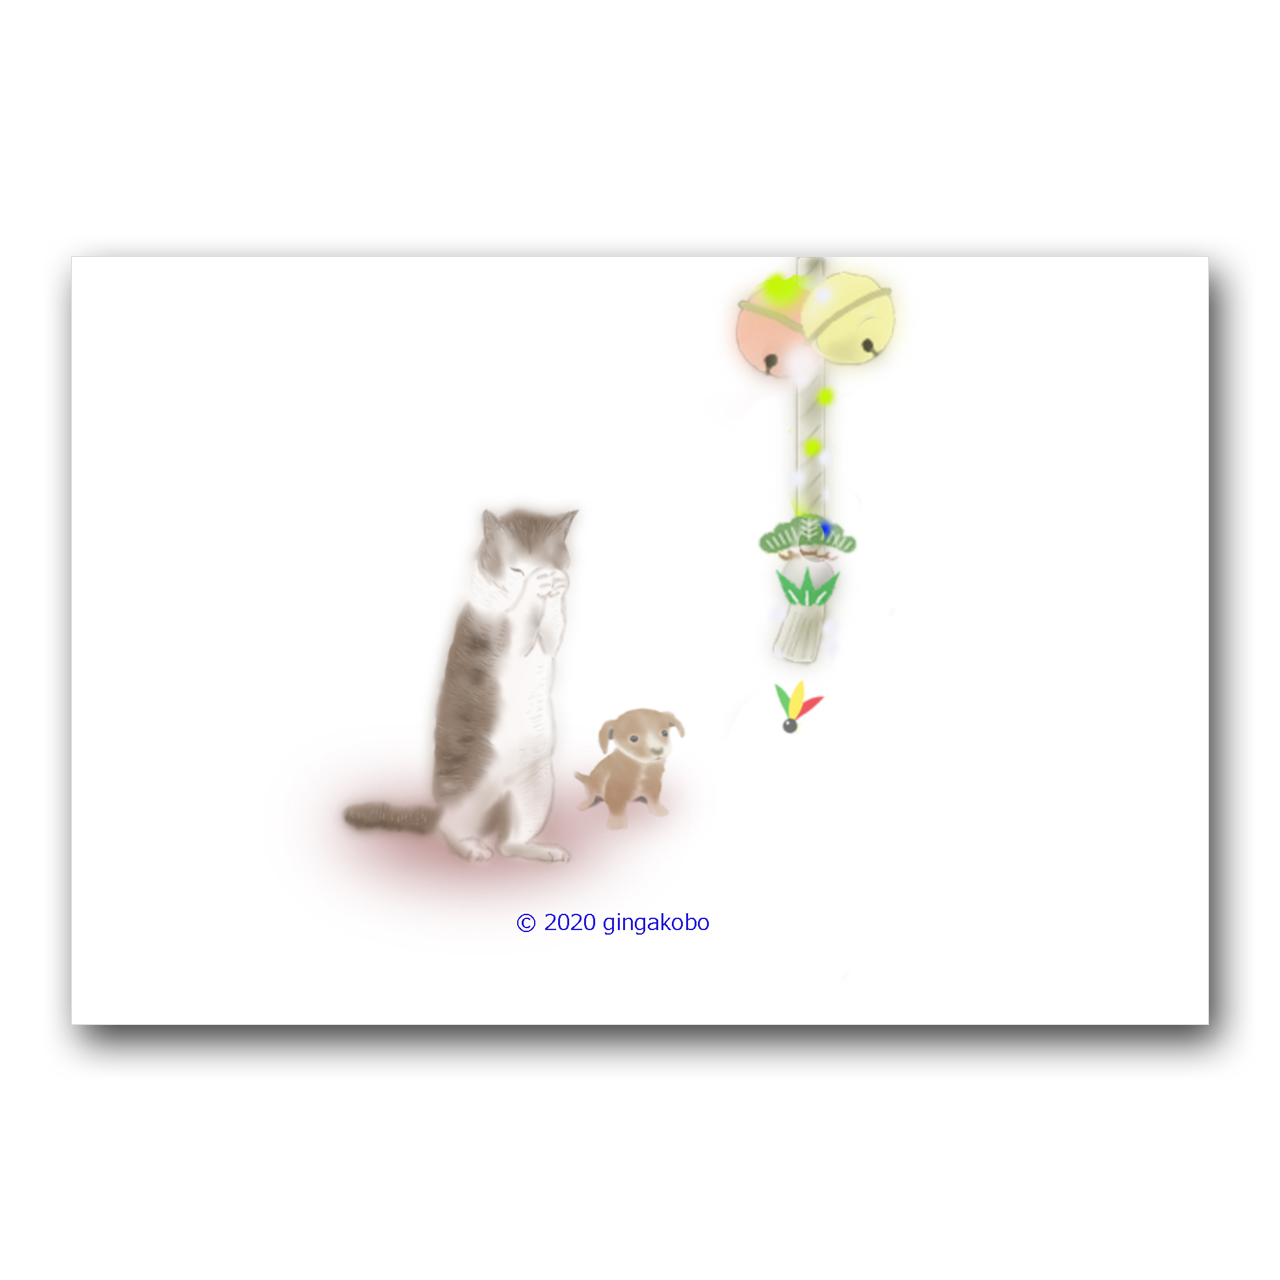 祈りと願い 猫 犬 ほっこり癒しのイラストポストカード2枚組 No 1250 Iichi ハンドメイド クラフト作品 手仕事品の通販